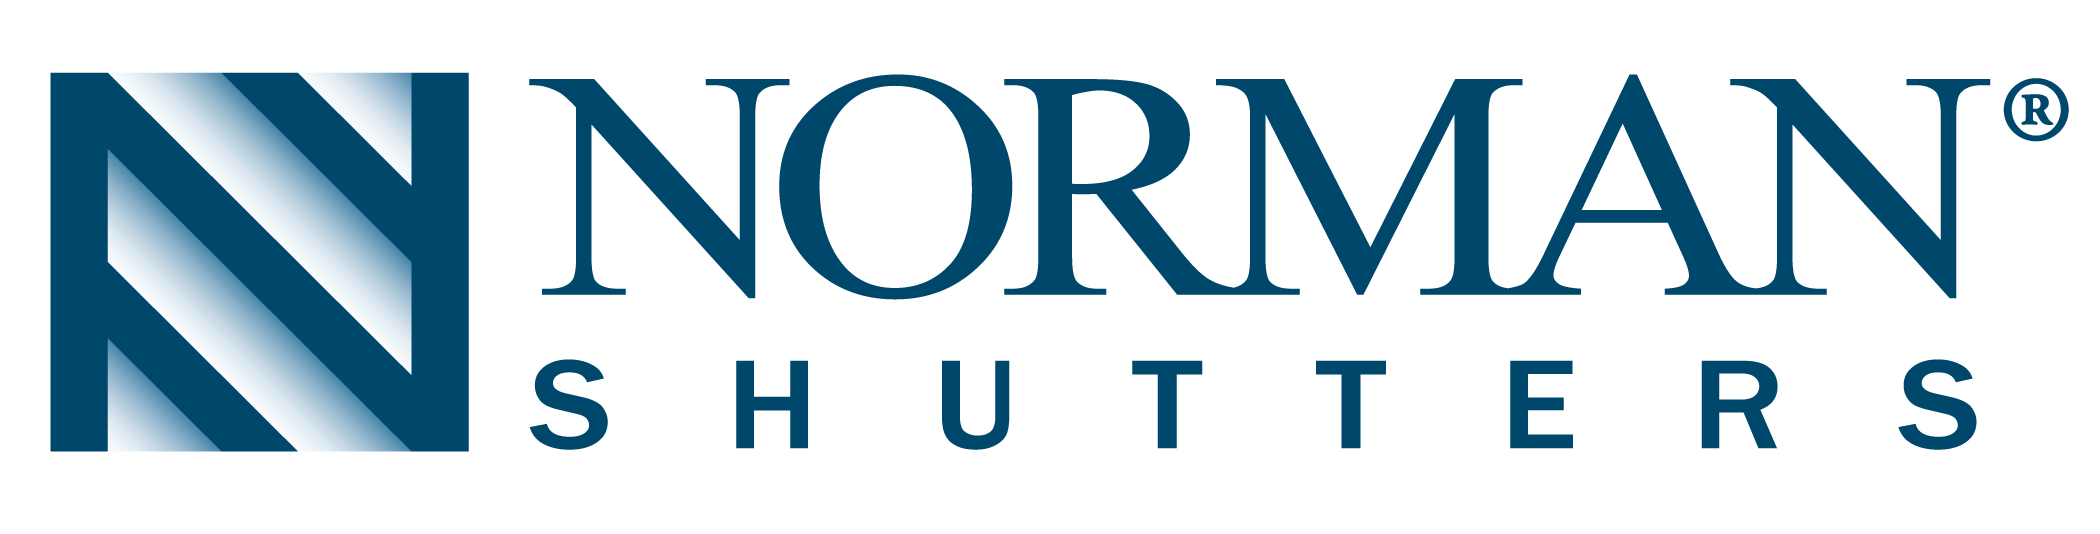 Norman shutters logo